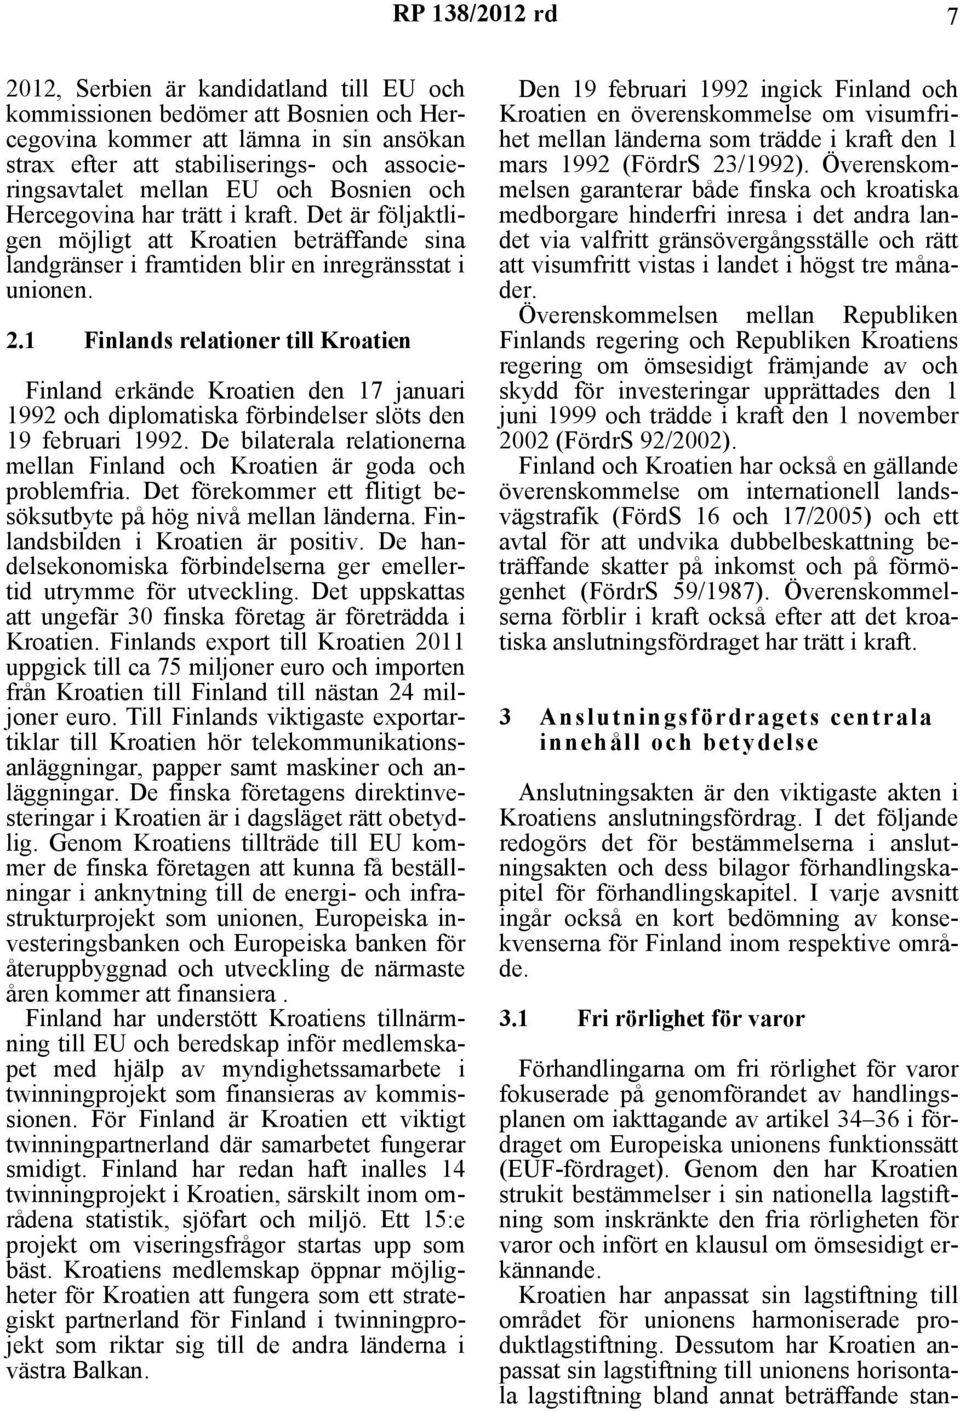 1 Finlands relationer till Kroatien Finland erkände Kroatien den 17 januari 1992 och diplomatiska förbindelser slöts den 19 februari 1992.